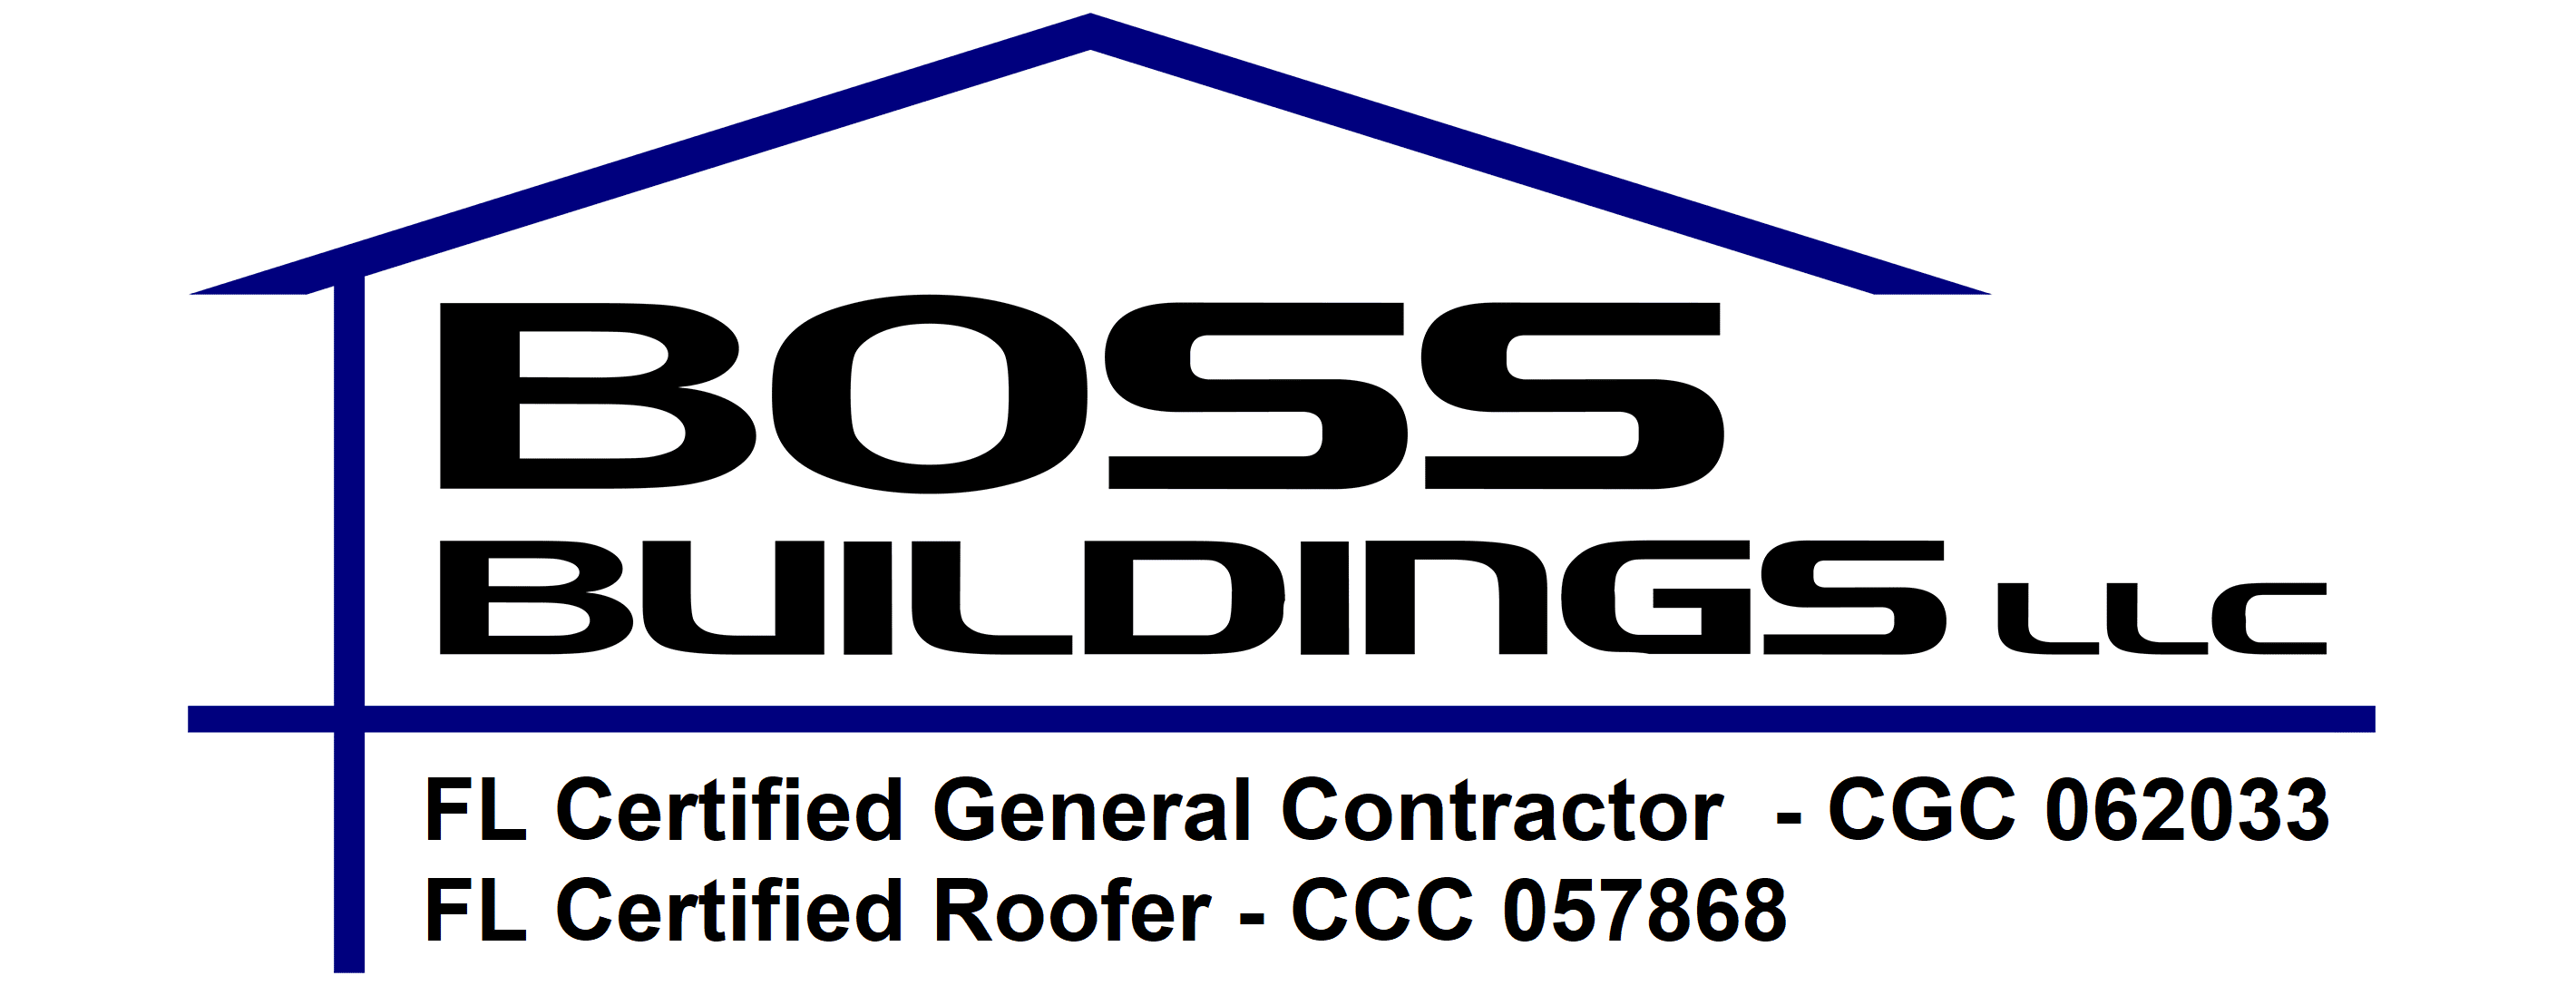 Boss Buildings LLC